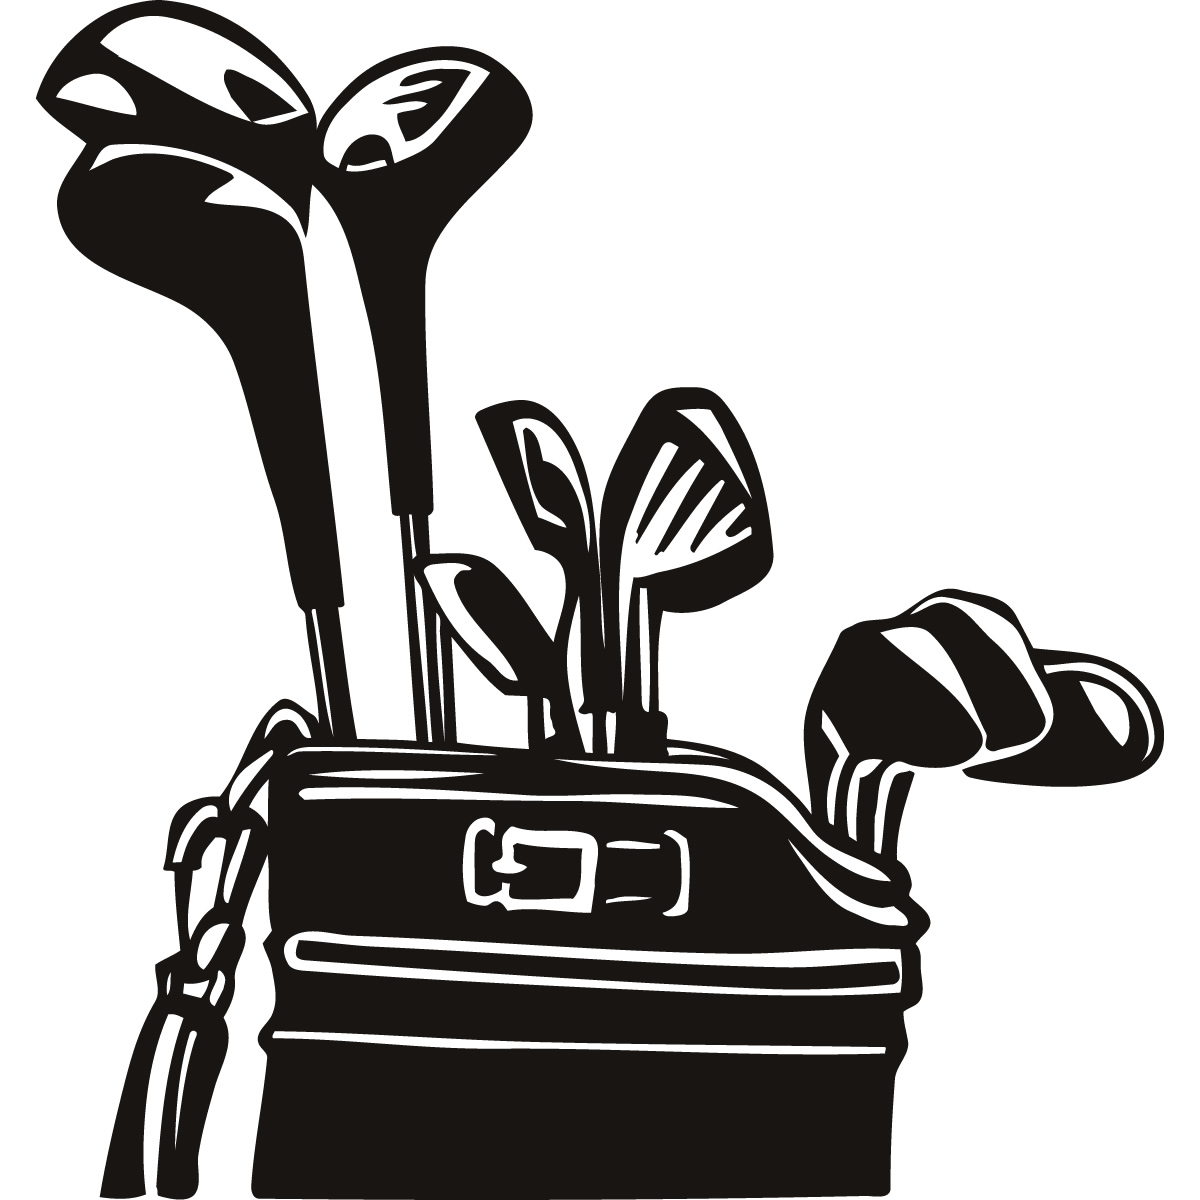 Golf equipment clipart